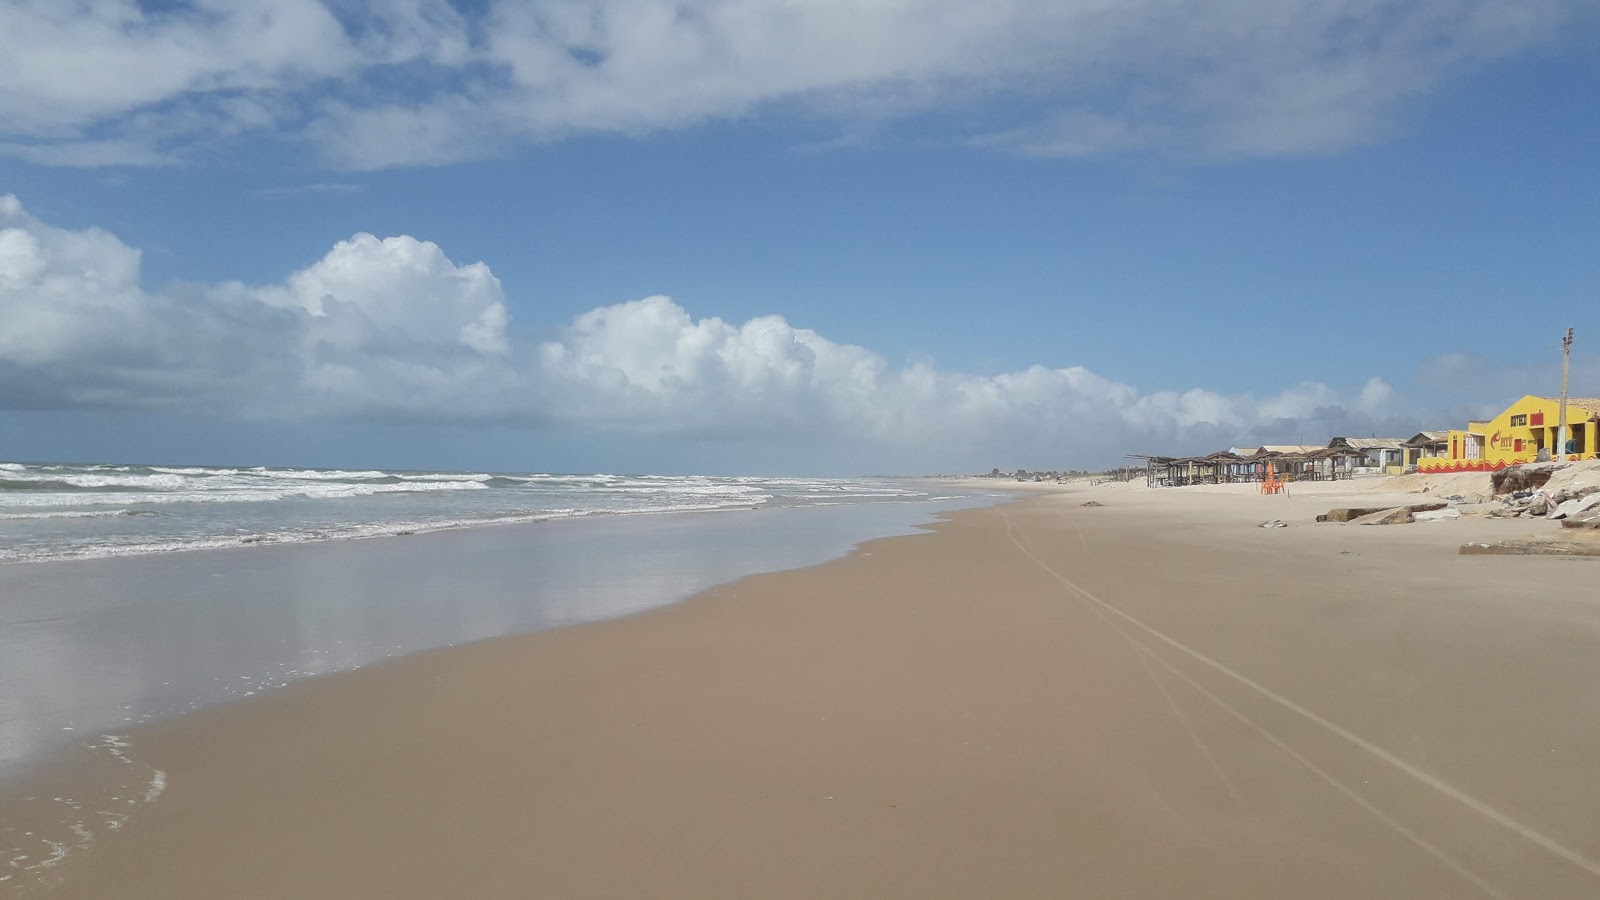 Zdjęcie Praia do abais z powierzchnią jasny piasek